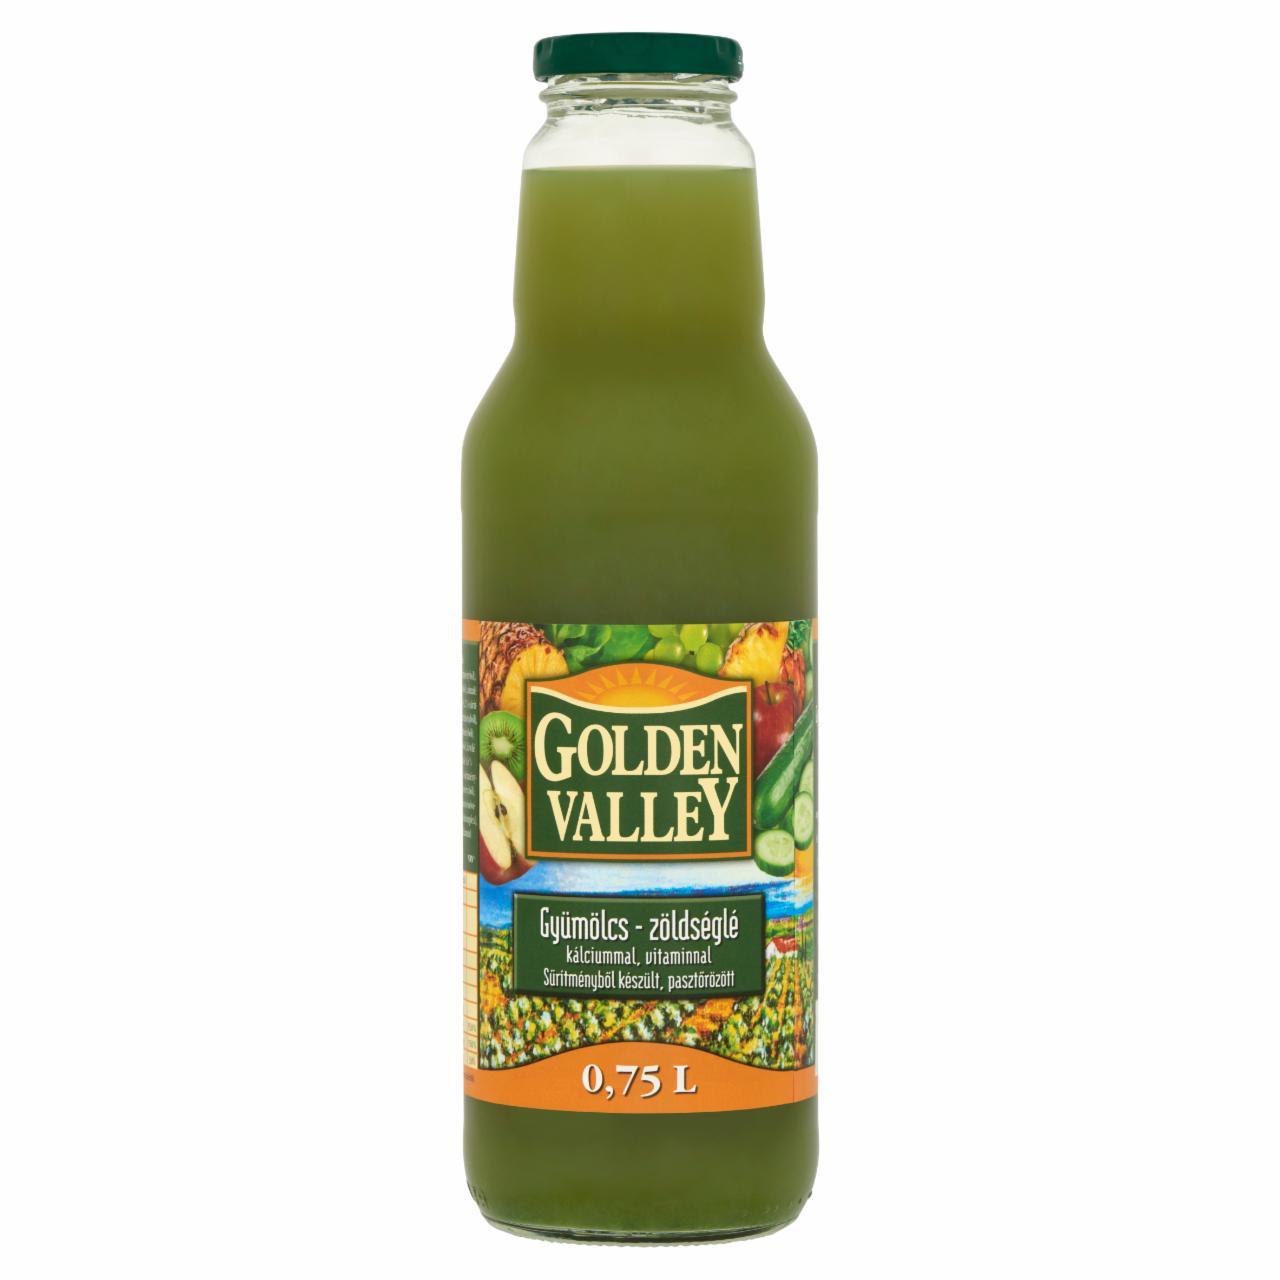 Képek - Golden Valley gyümölcs-zöldséglé kalciummal, vitaminnal 0,75 l